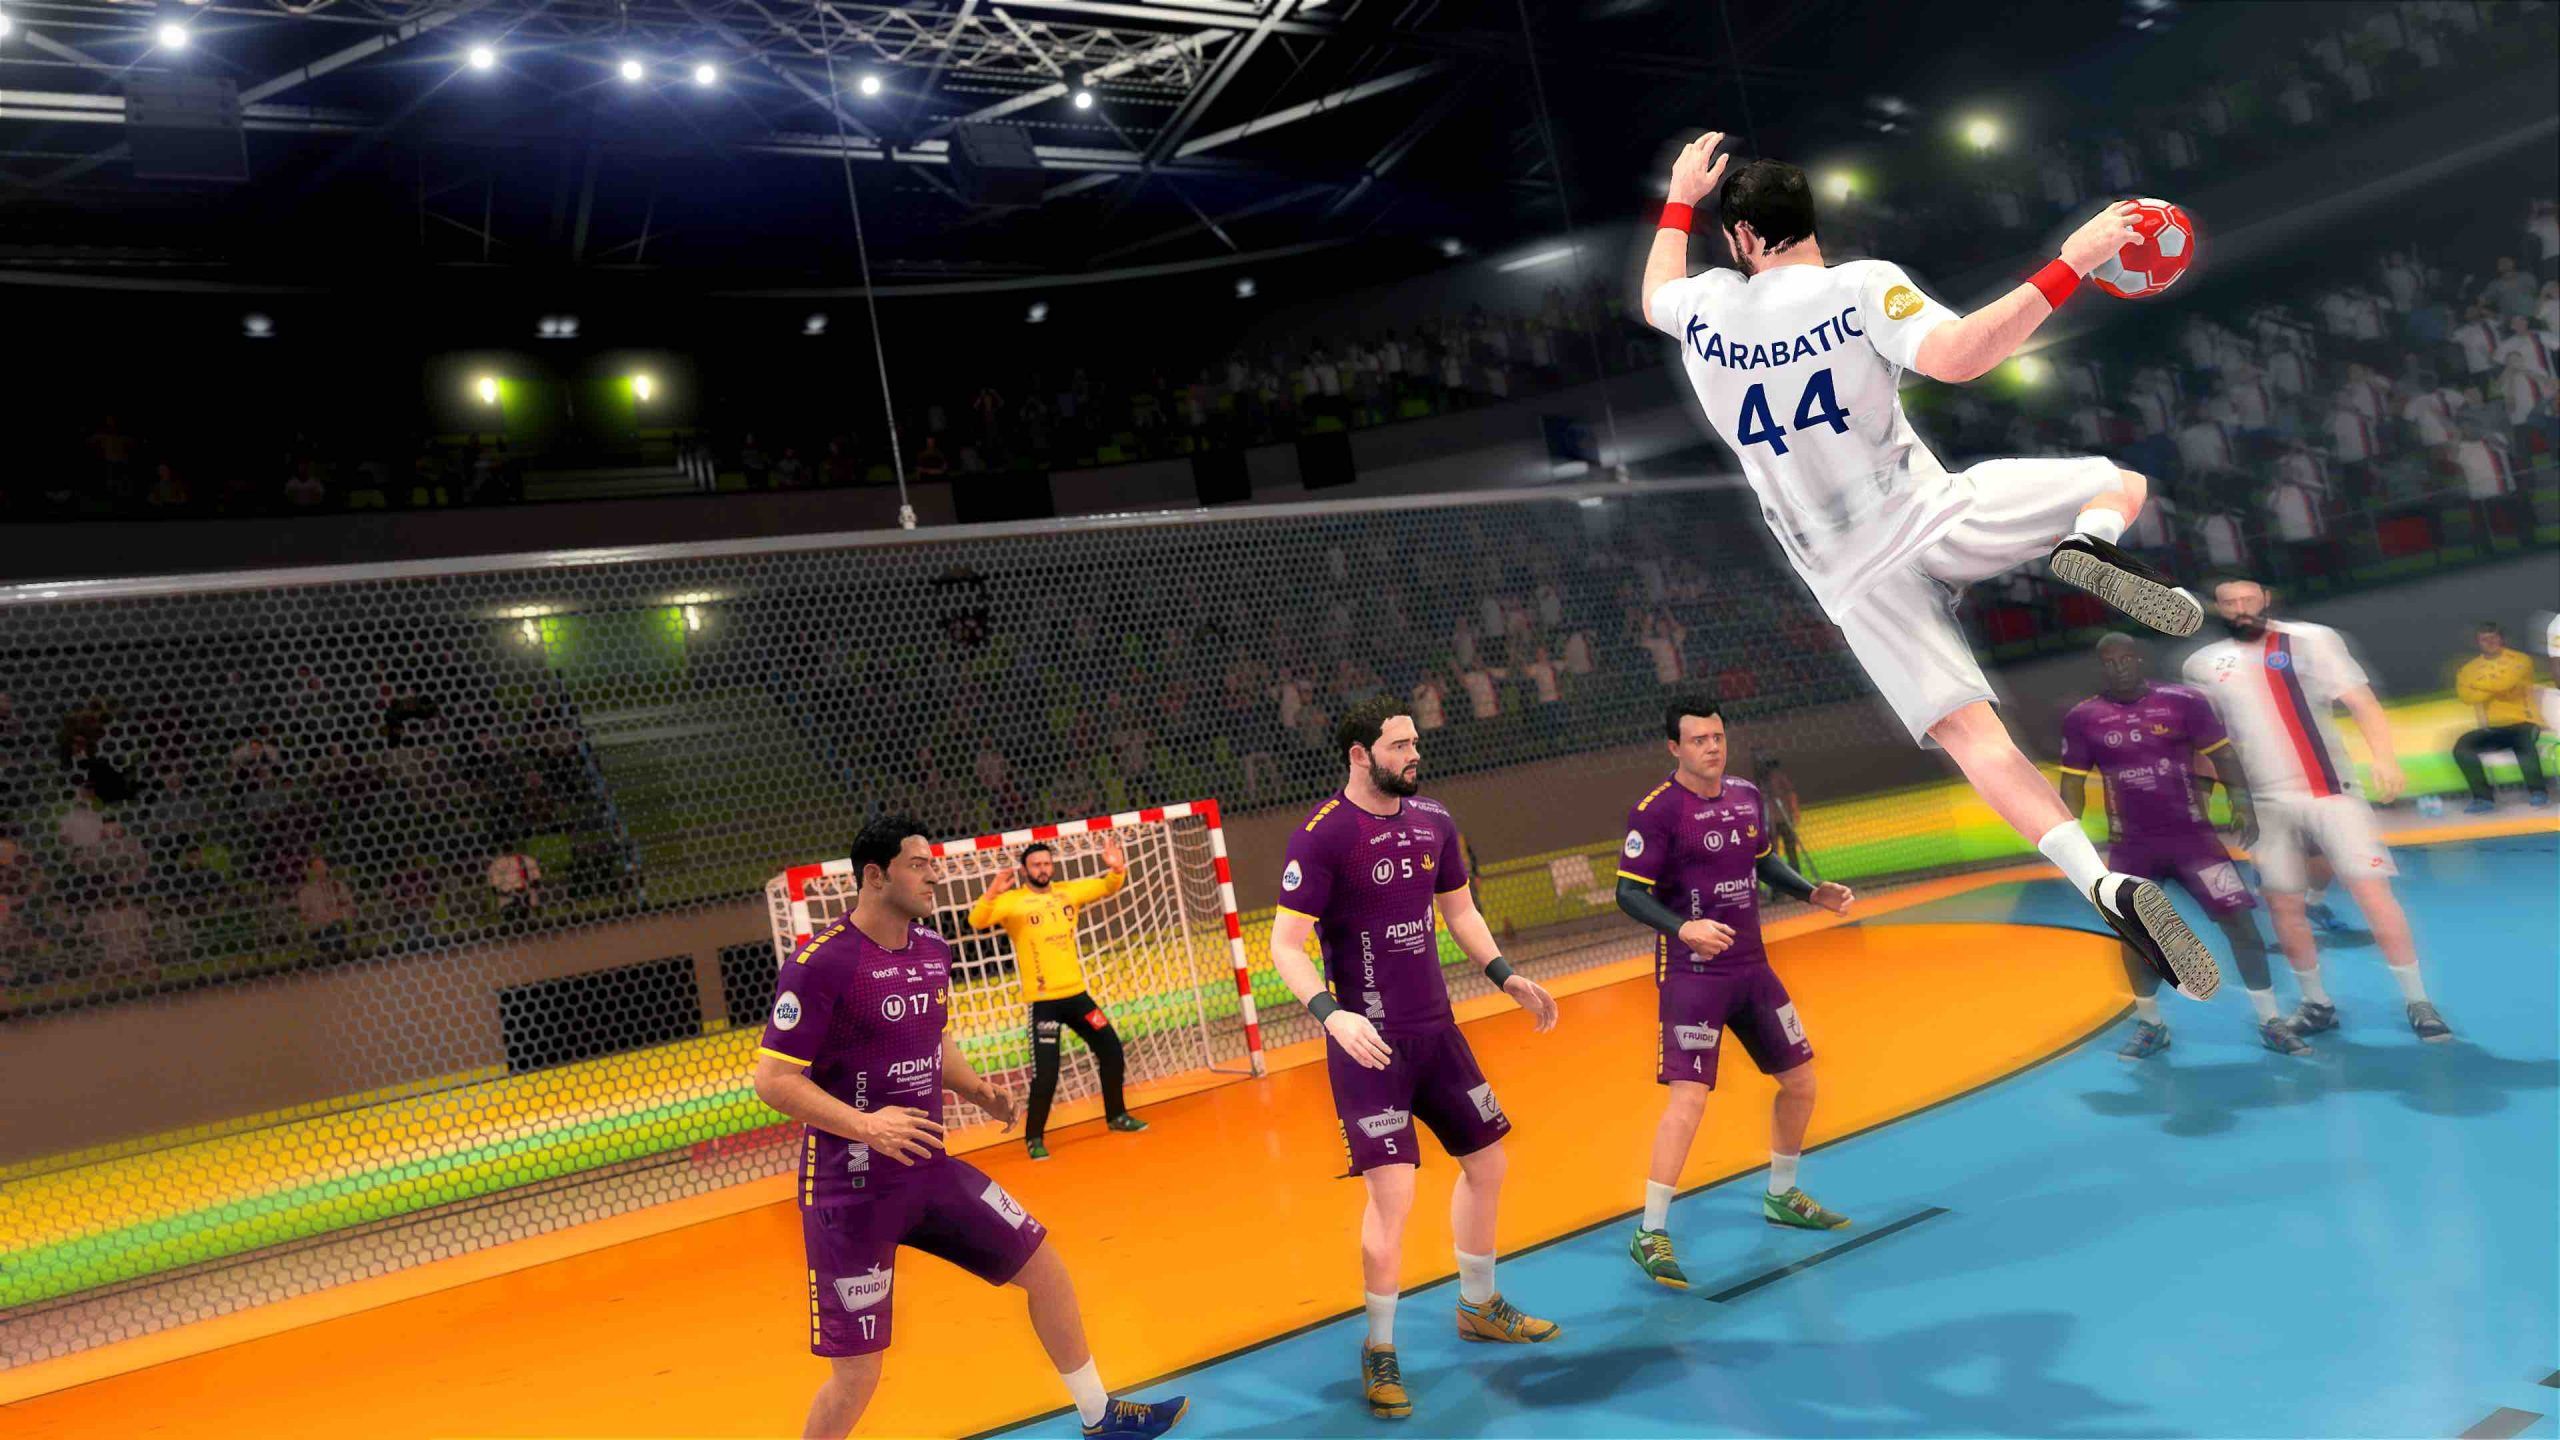 Handball 21 ya golea en Xbox One y PC, no te pierdas su tráiler de lanzamiento - AllGamersIn